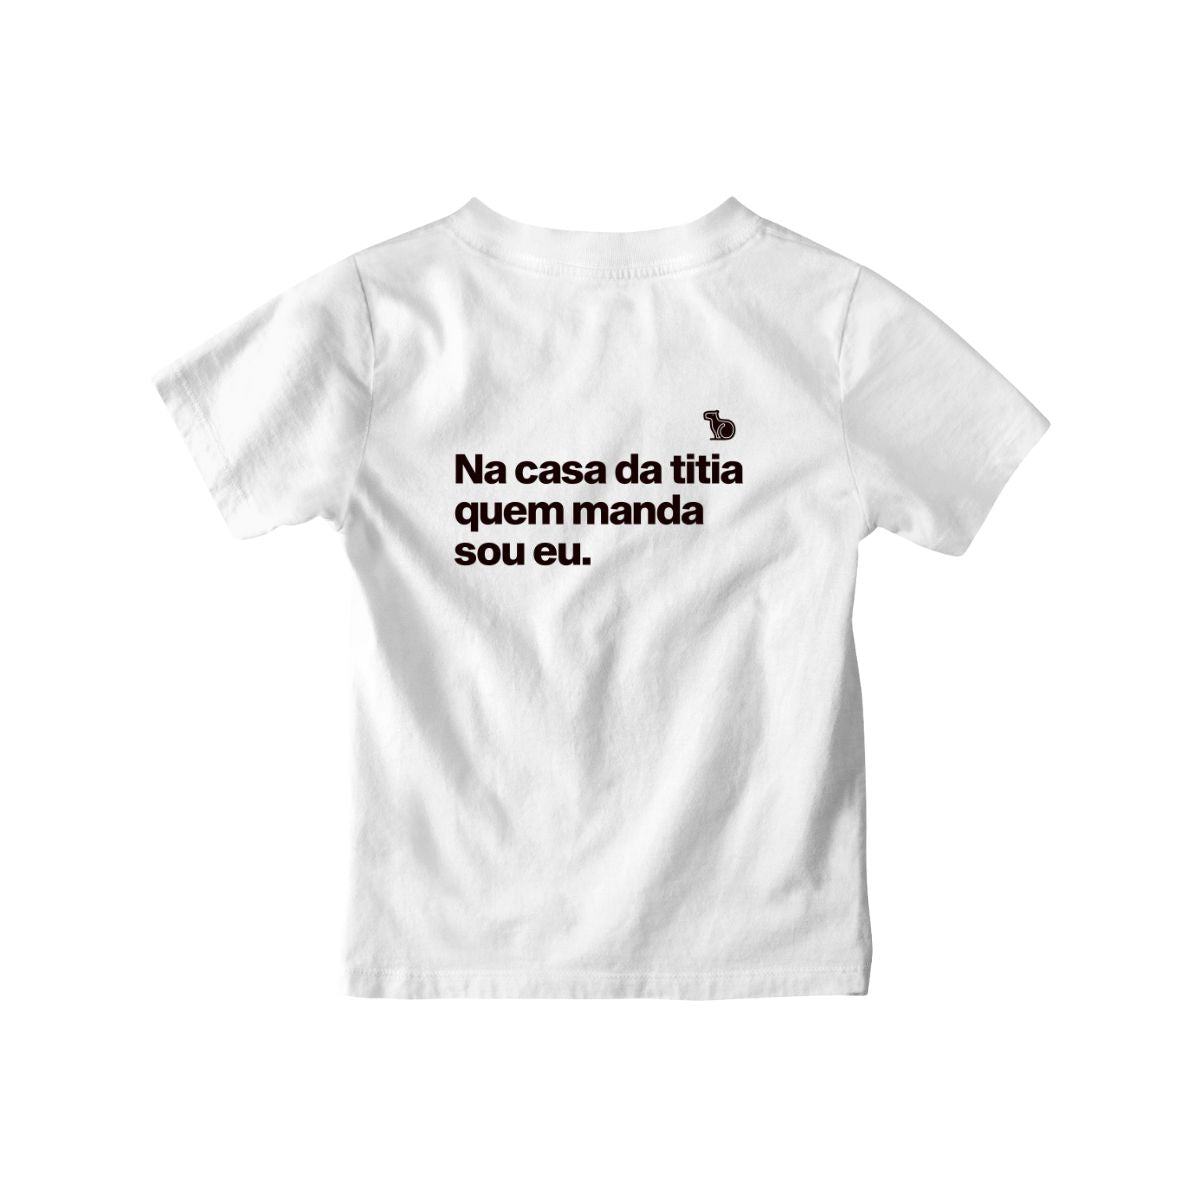 Camiseta infantil branca com a frase "na casa da titia quem manda sou eu."